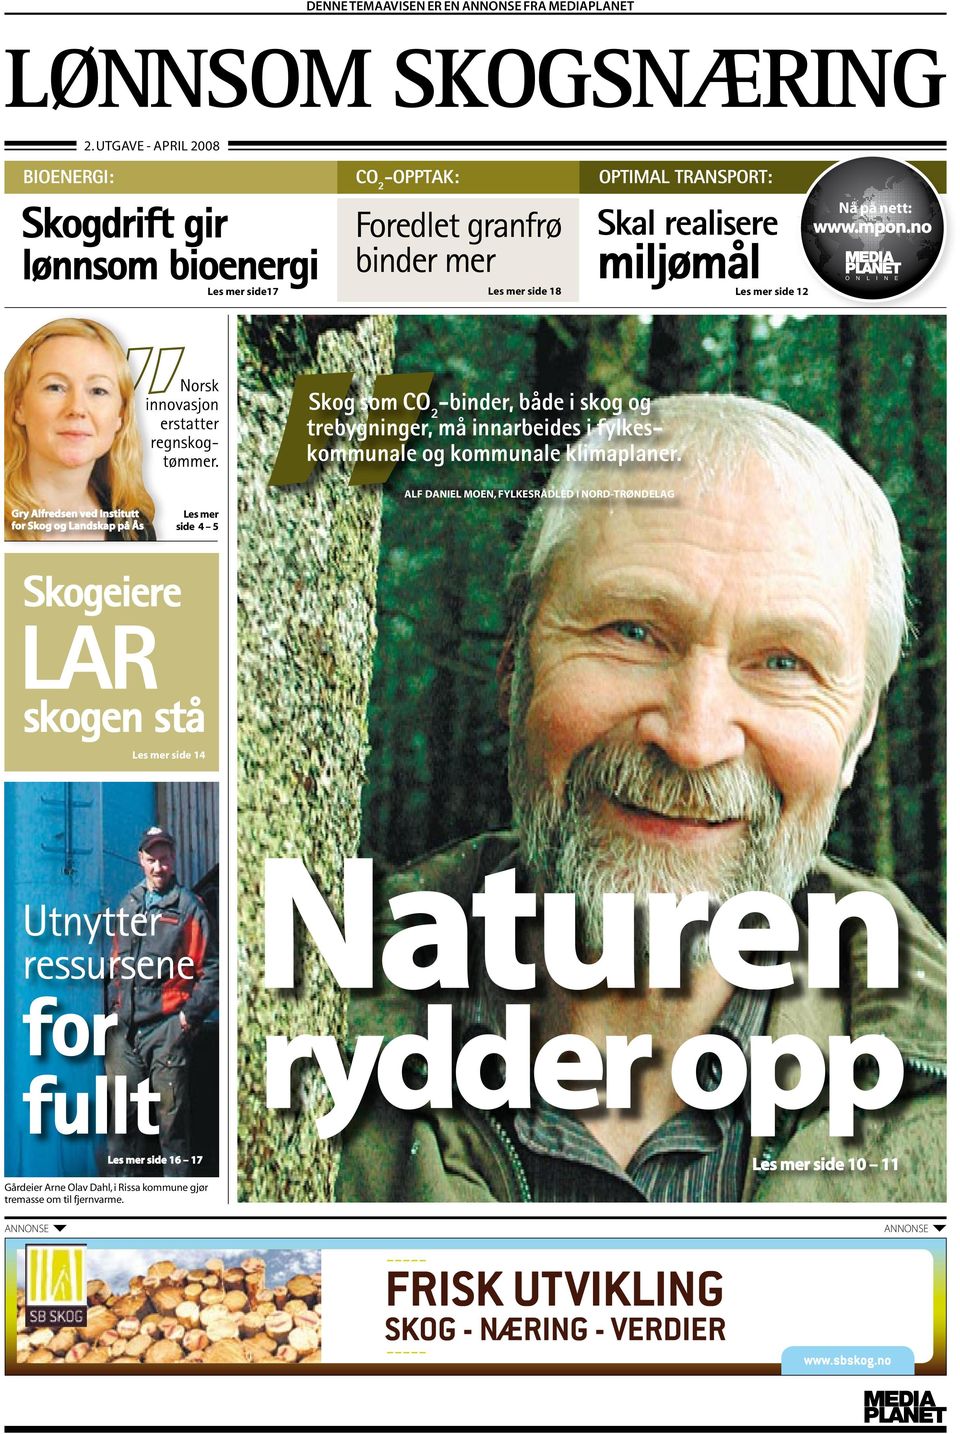 på nett: www.mpon.no N L I N E Norsk innovasjon erstatter regnskogtømmer. Skog som CO 2 -binder, både i skog og trebygninger, må innarbeides i fylkeskommunale og kommunale klimaplaner.